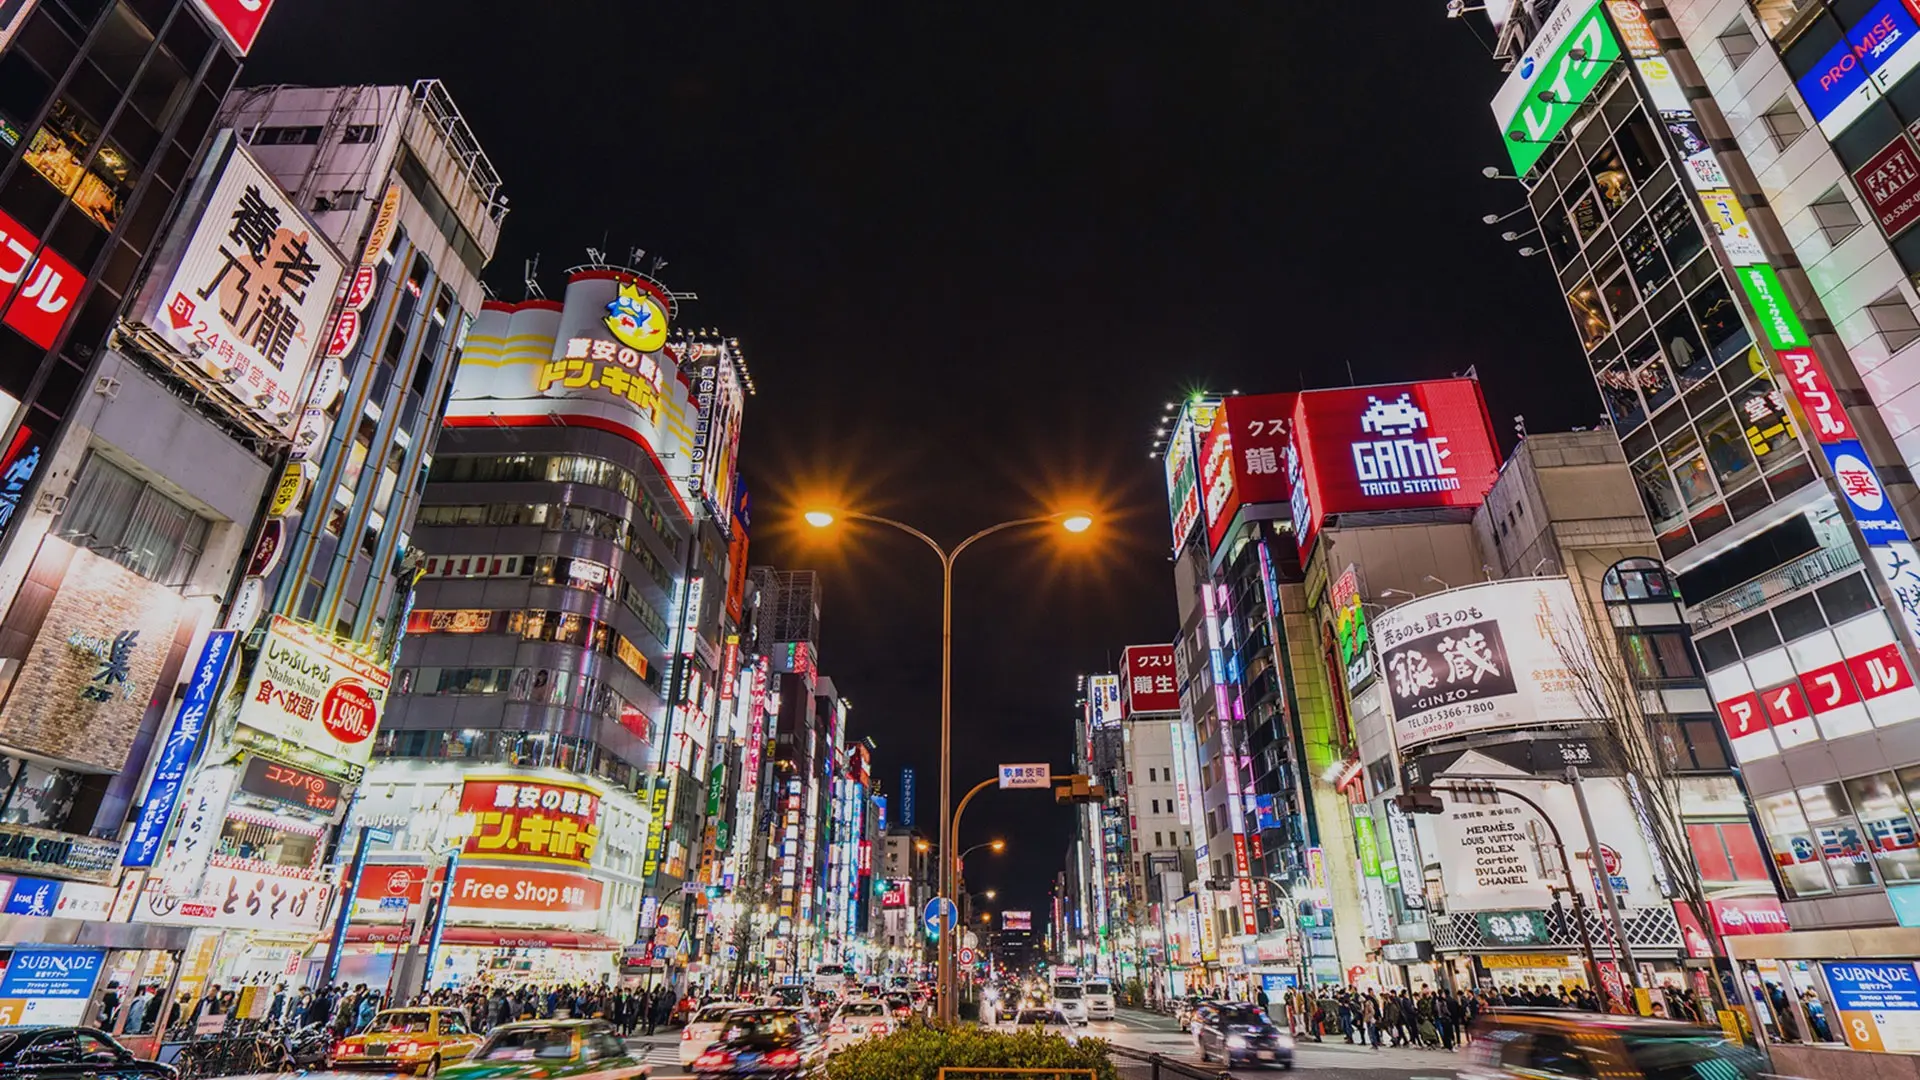 City lights, busy street, and advertisements at Shinjuku.